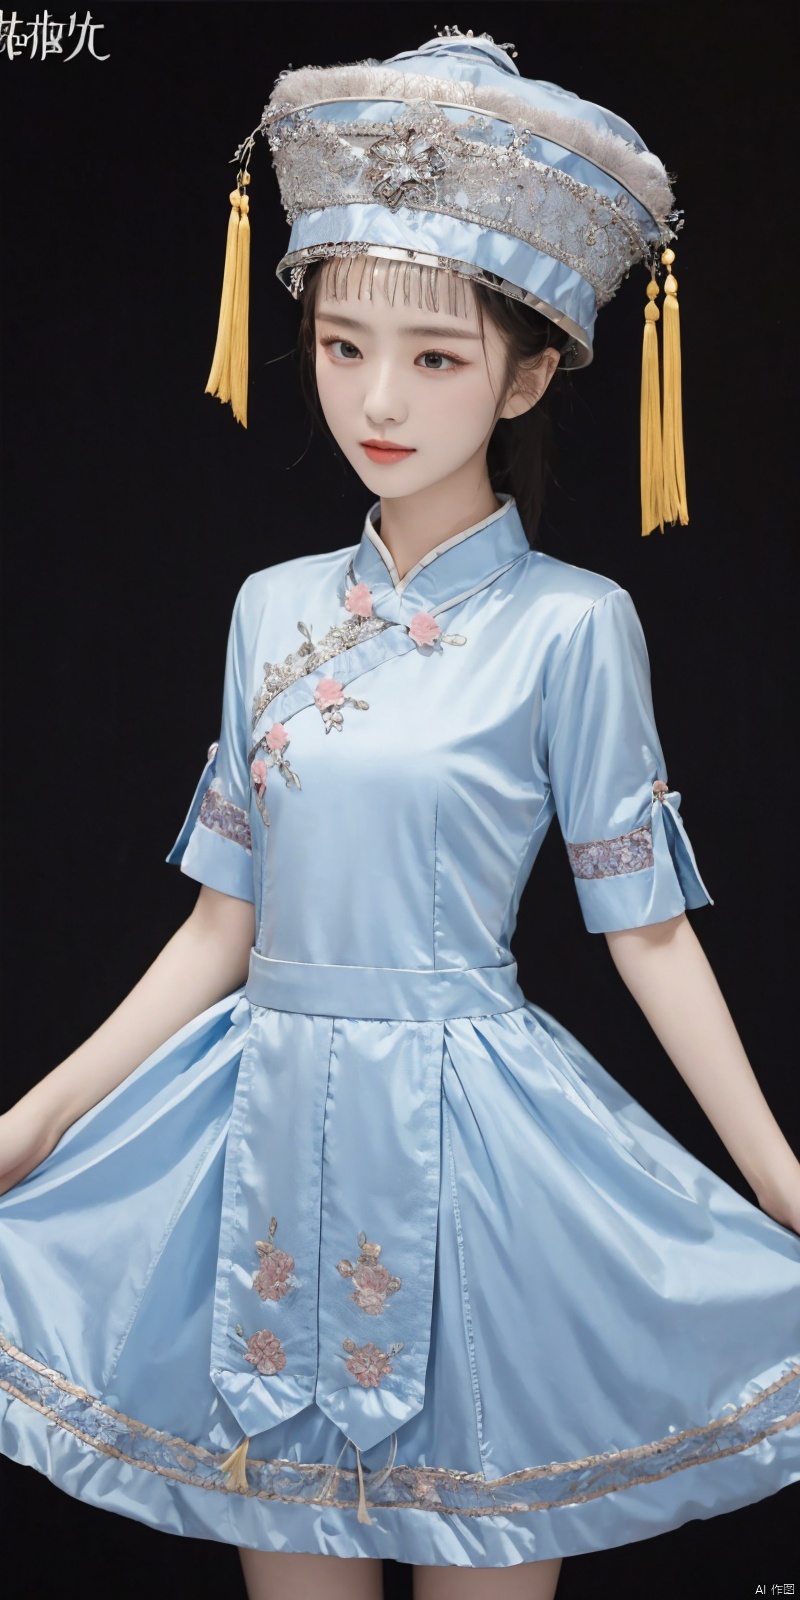  
zhuangzu, 1girl, solo, hat, dress